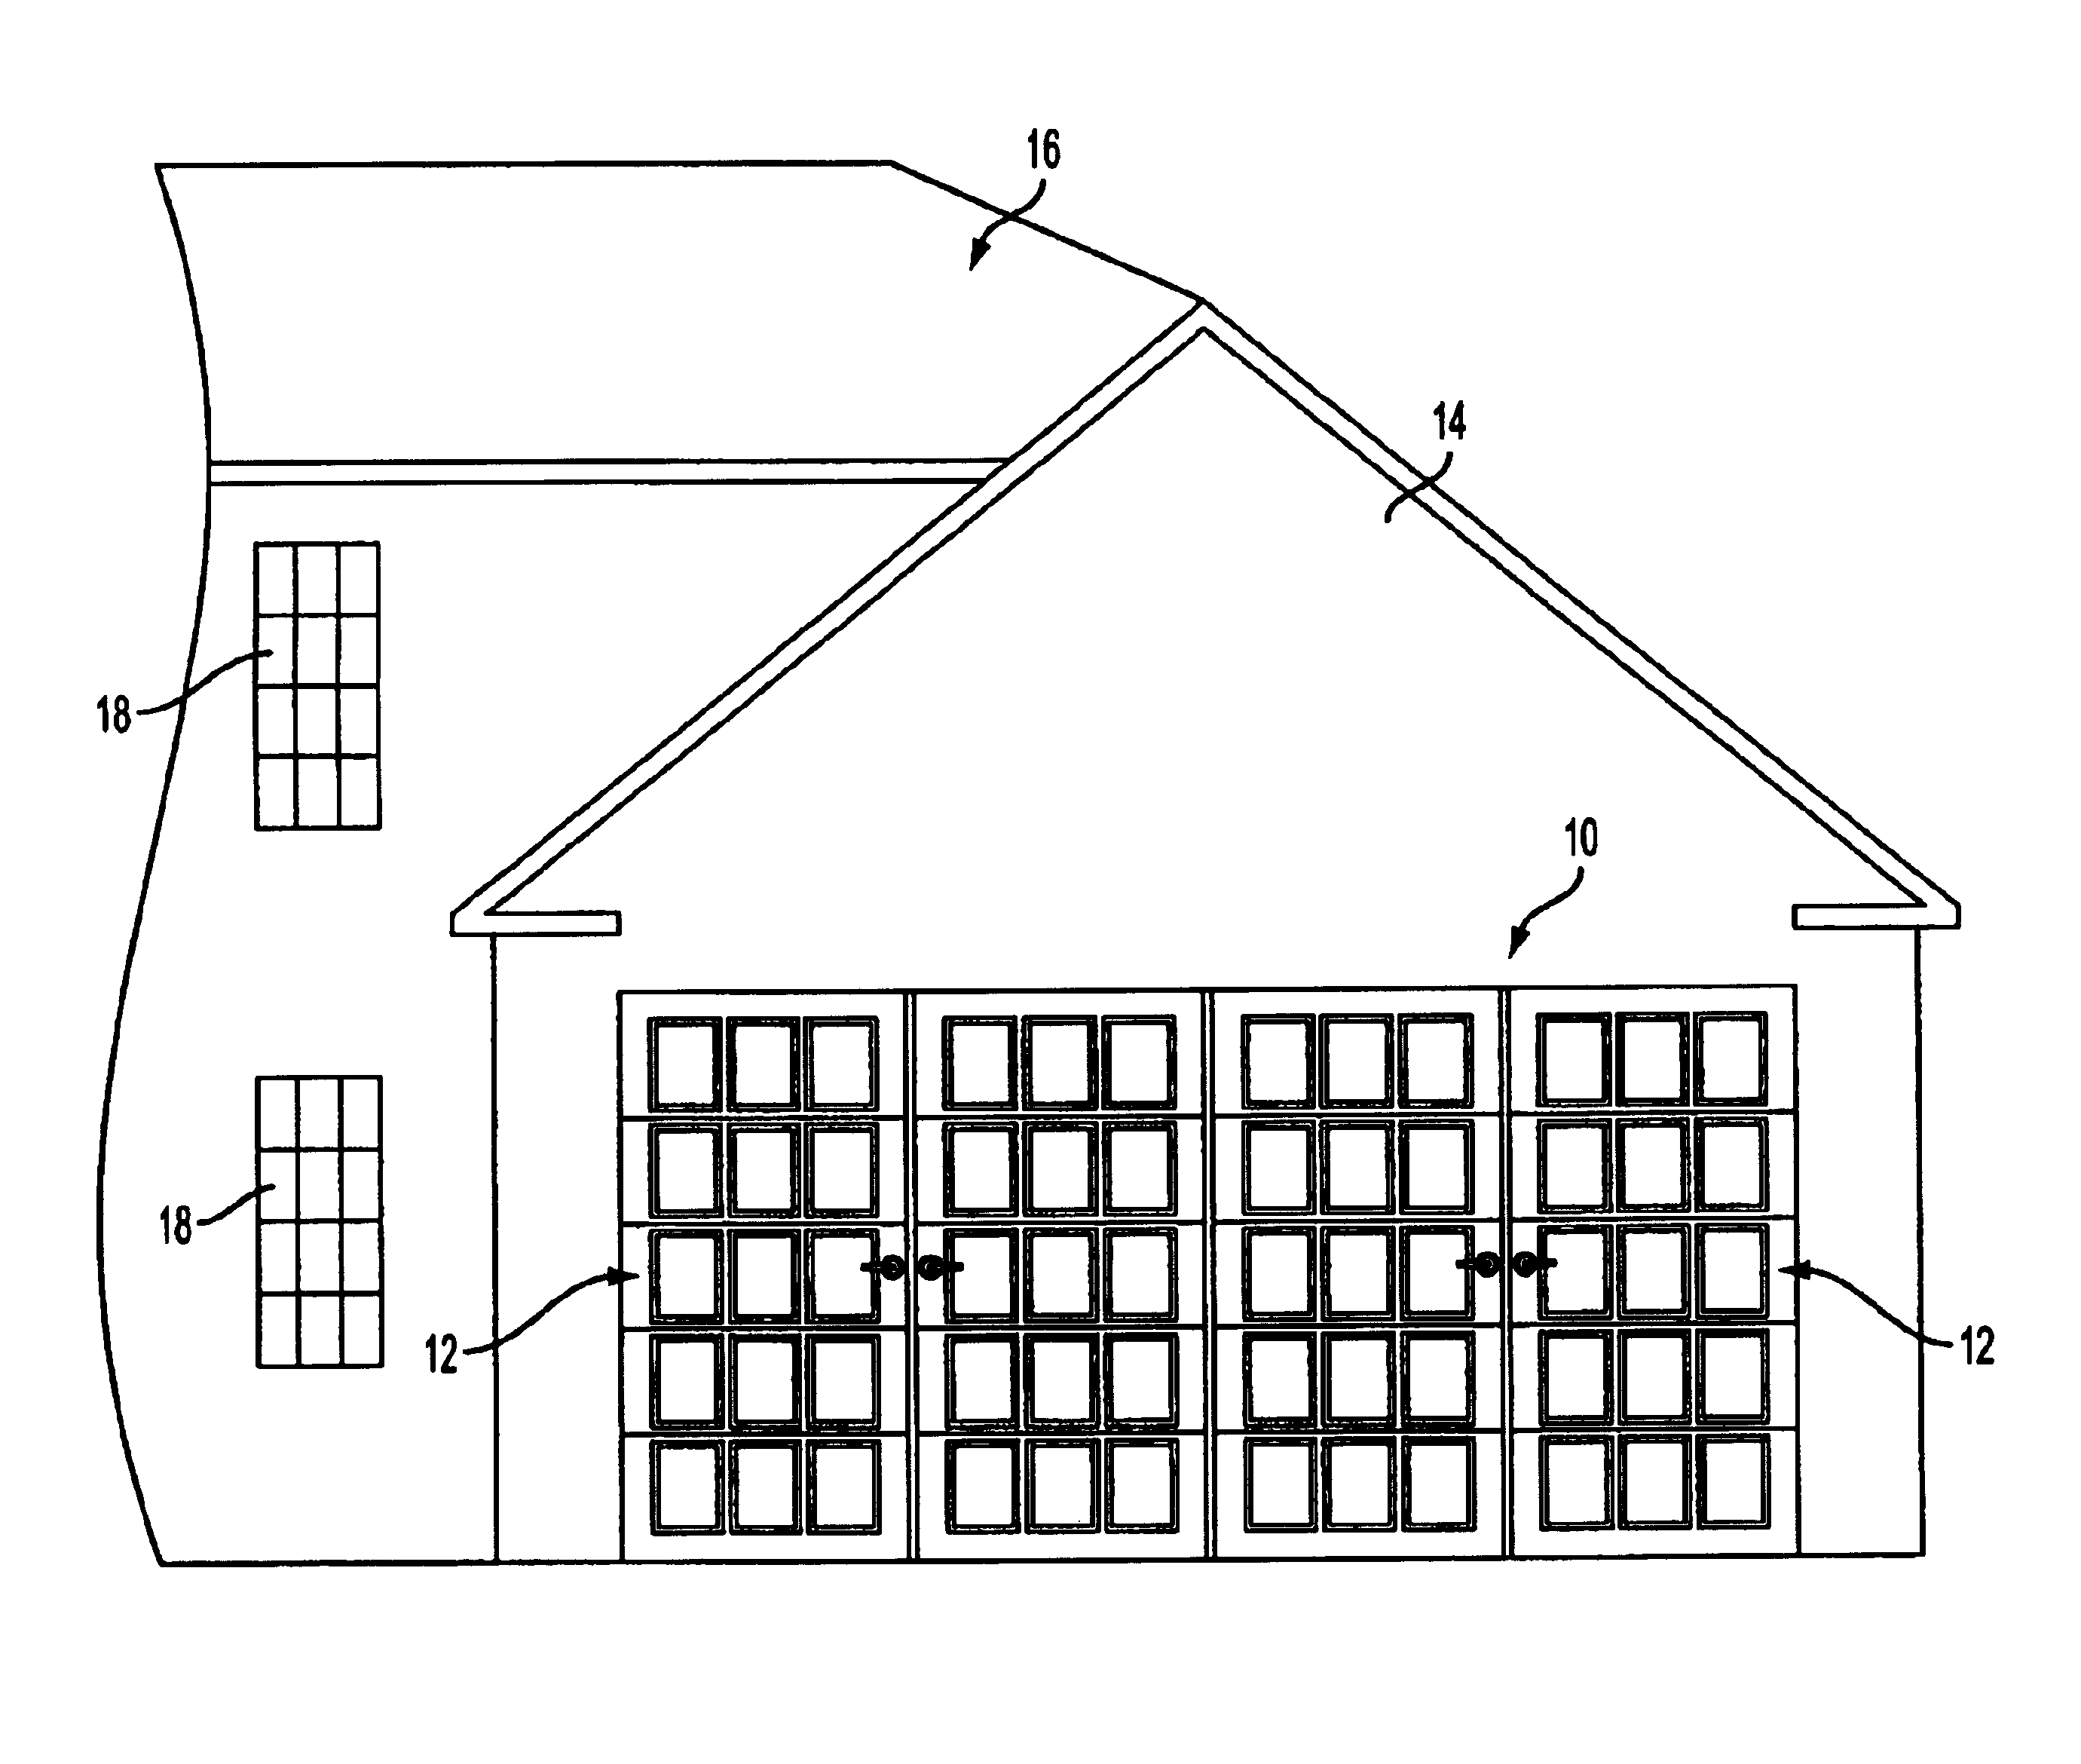 Overhead garage door with decorative house facade elements